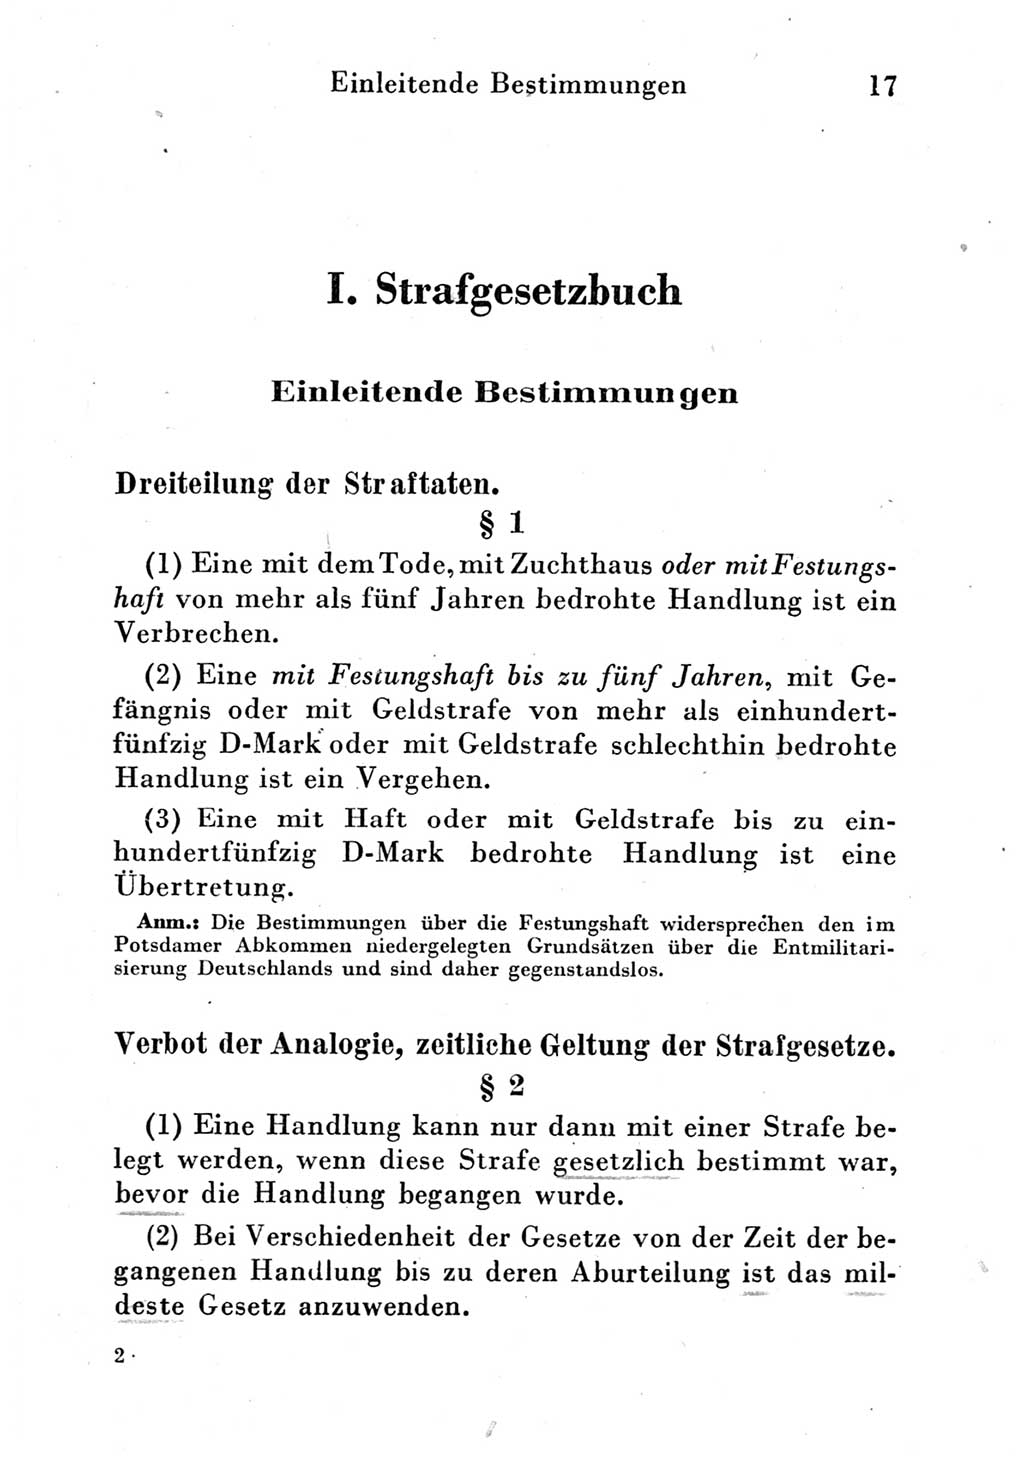 Strafgesetzbuch (StGB) und andere Strafgesetze [Deutsche Demokratische Republik (DDR)] 1951, Seite 17 (StGB Strafges. DDR 1951, S. 17)